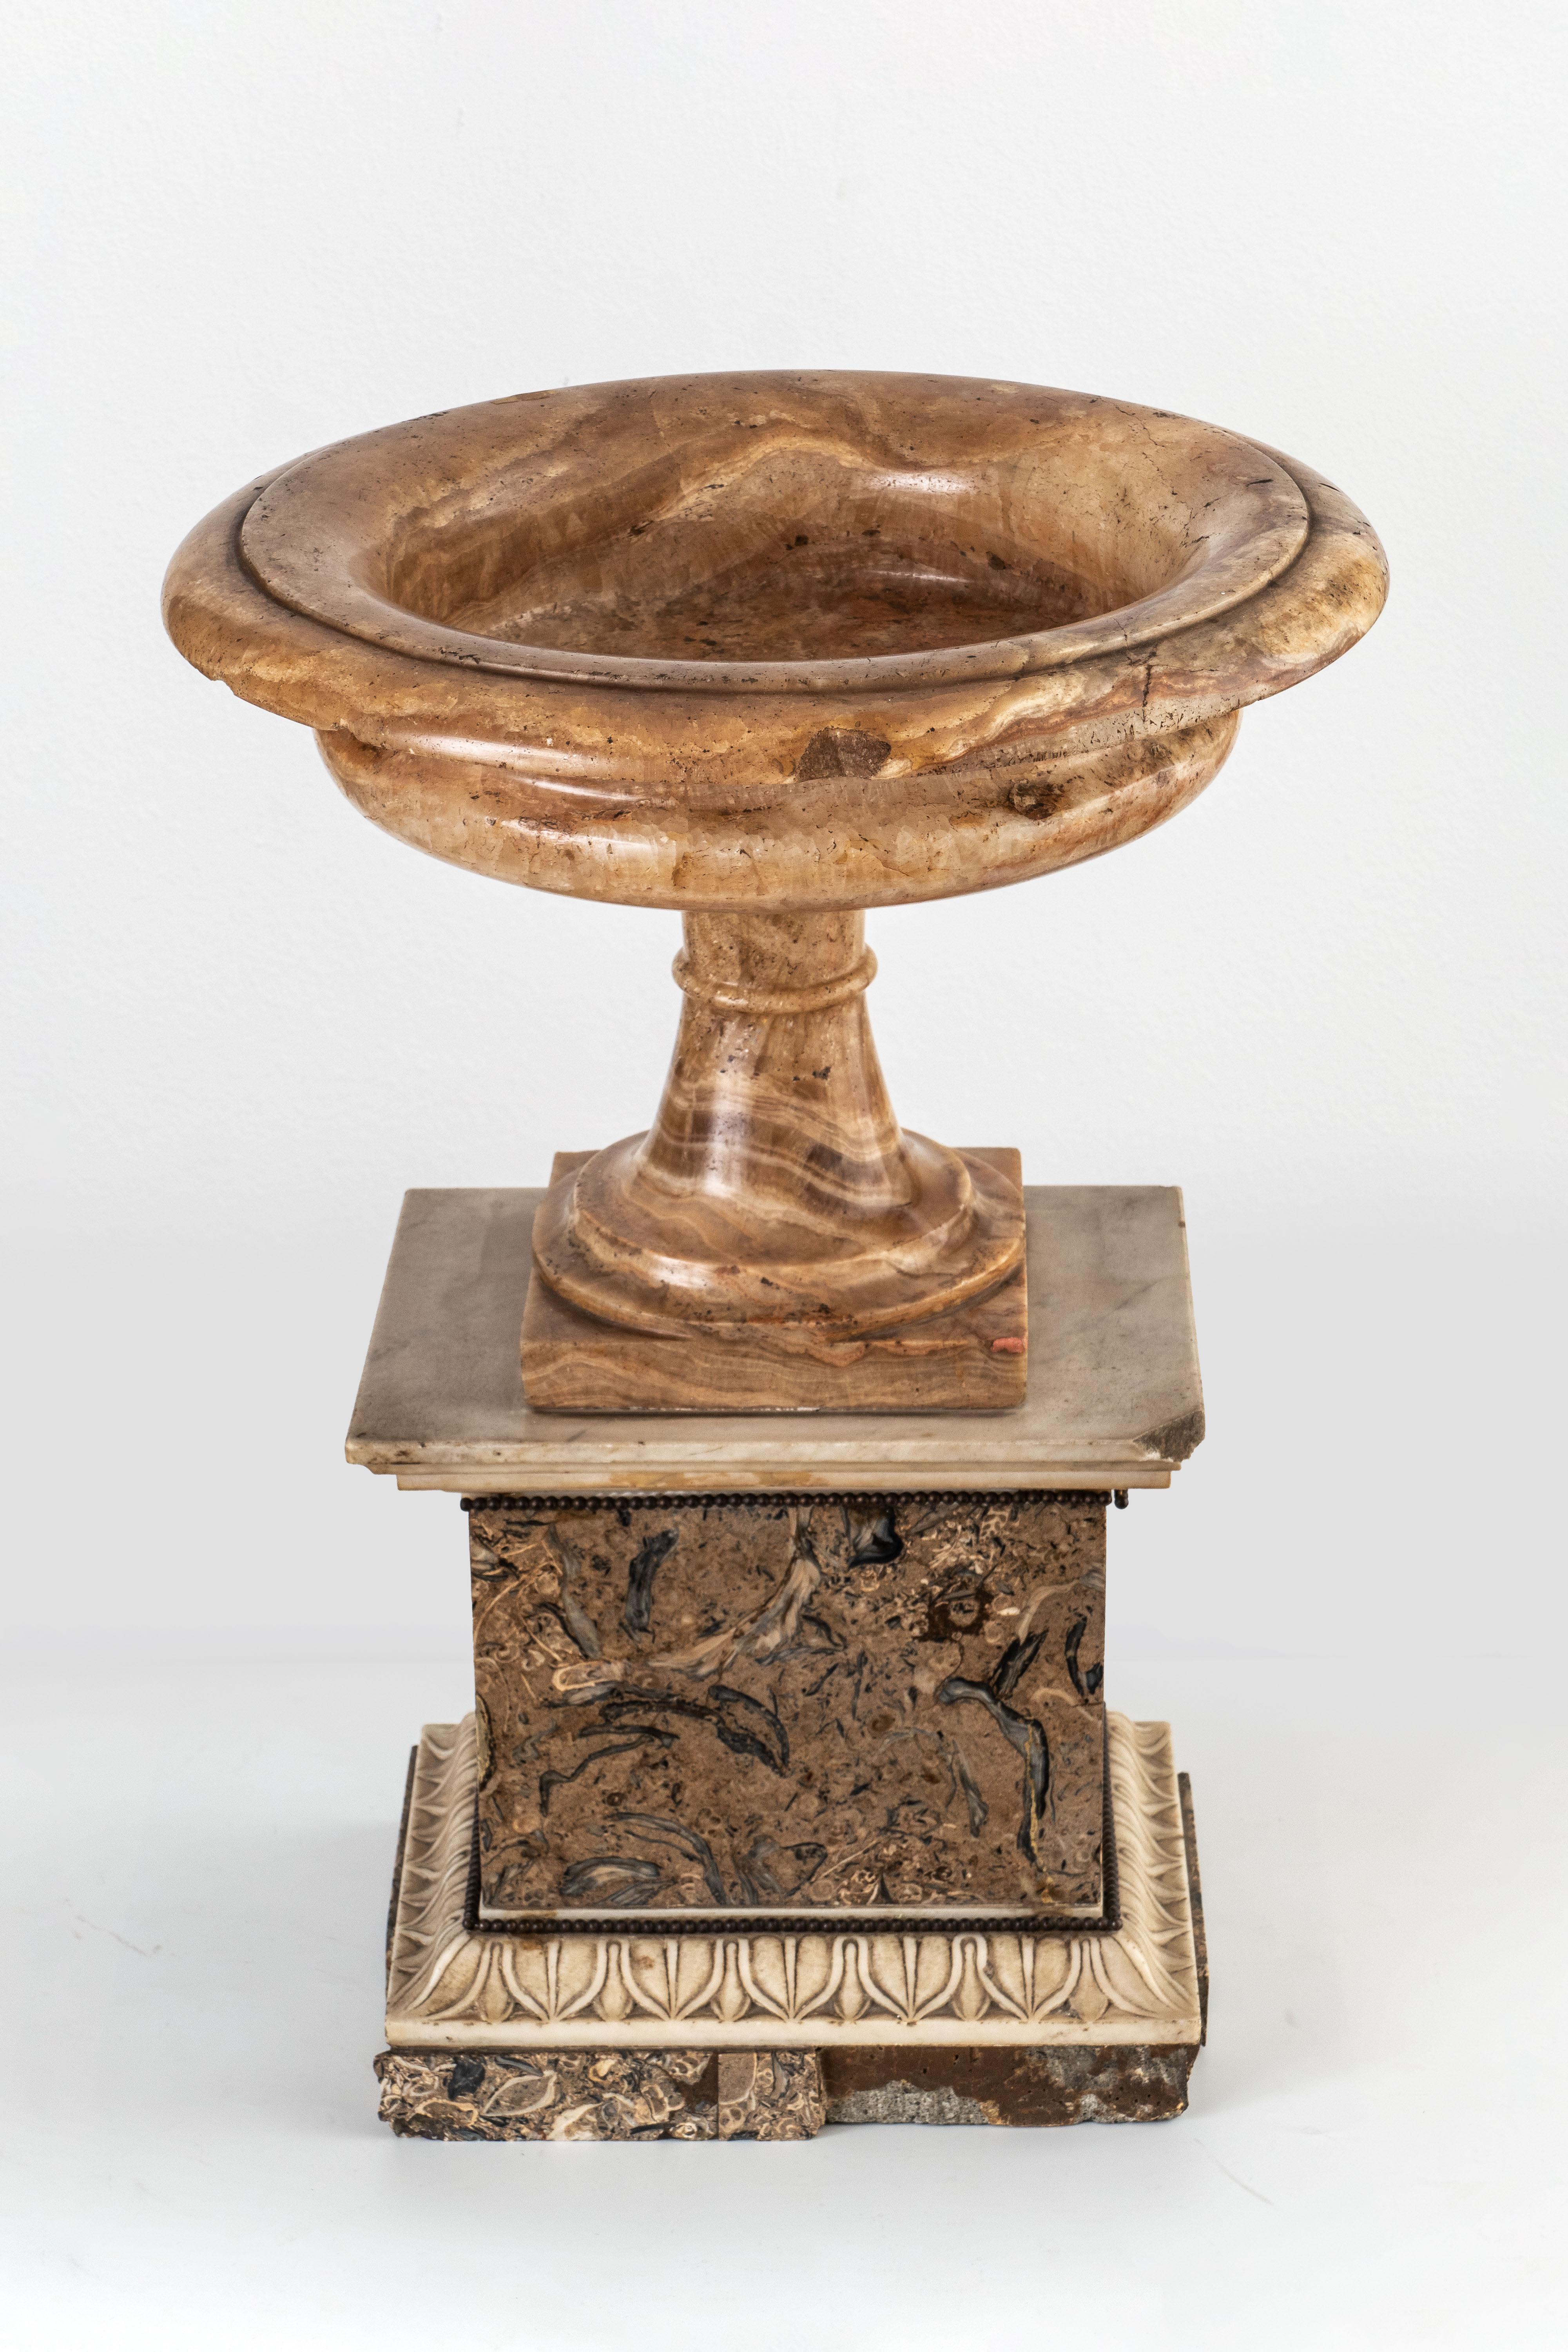 NEOKLASSISCHE TAZZA
Rom, 19. Jahrhundert
Alabastro fiorito und Lumachello-Marmor
H 44 cm, T 33 cm
H 17 1/4 T 13 Zoll